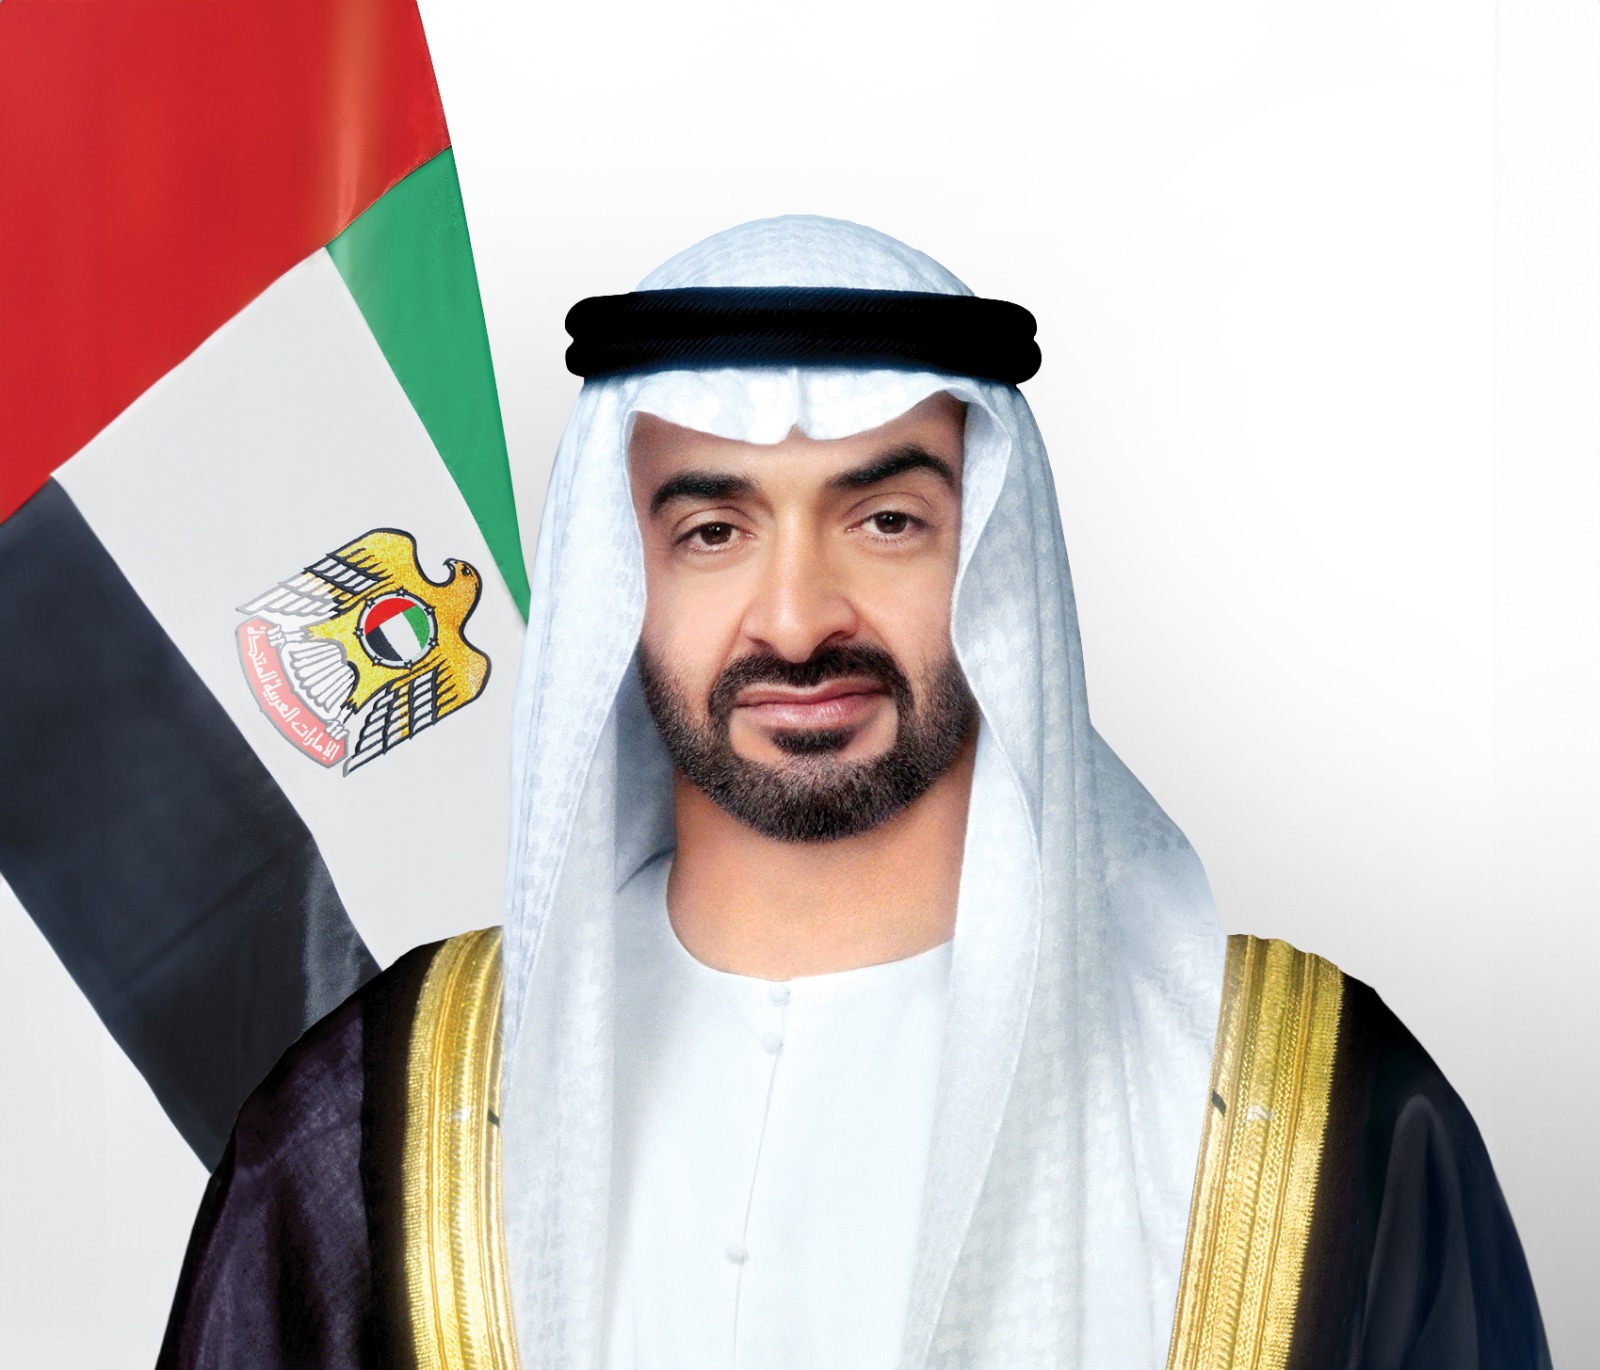 رئيس الدولة يتلقى برقيتي تعزية في وفاة طحنون بن محمد من ملك البحرين...